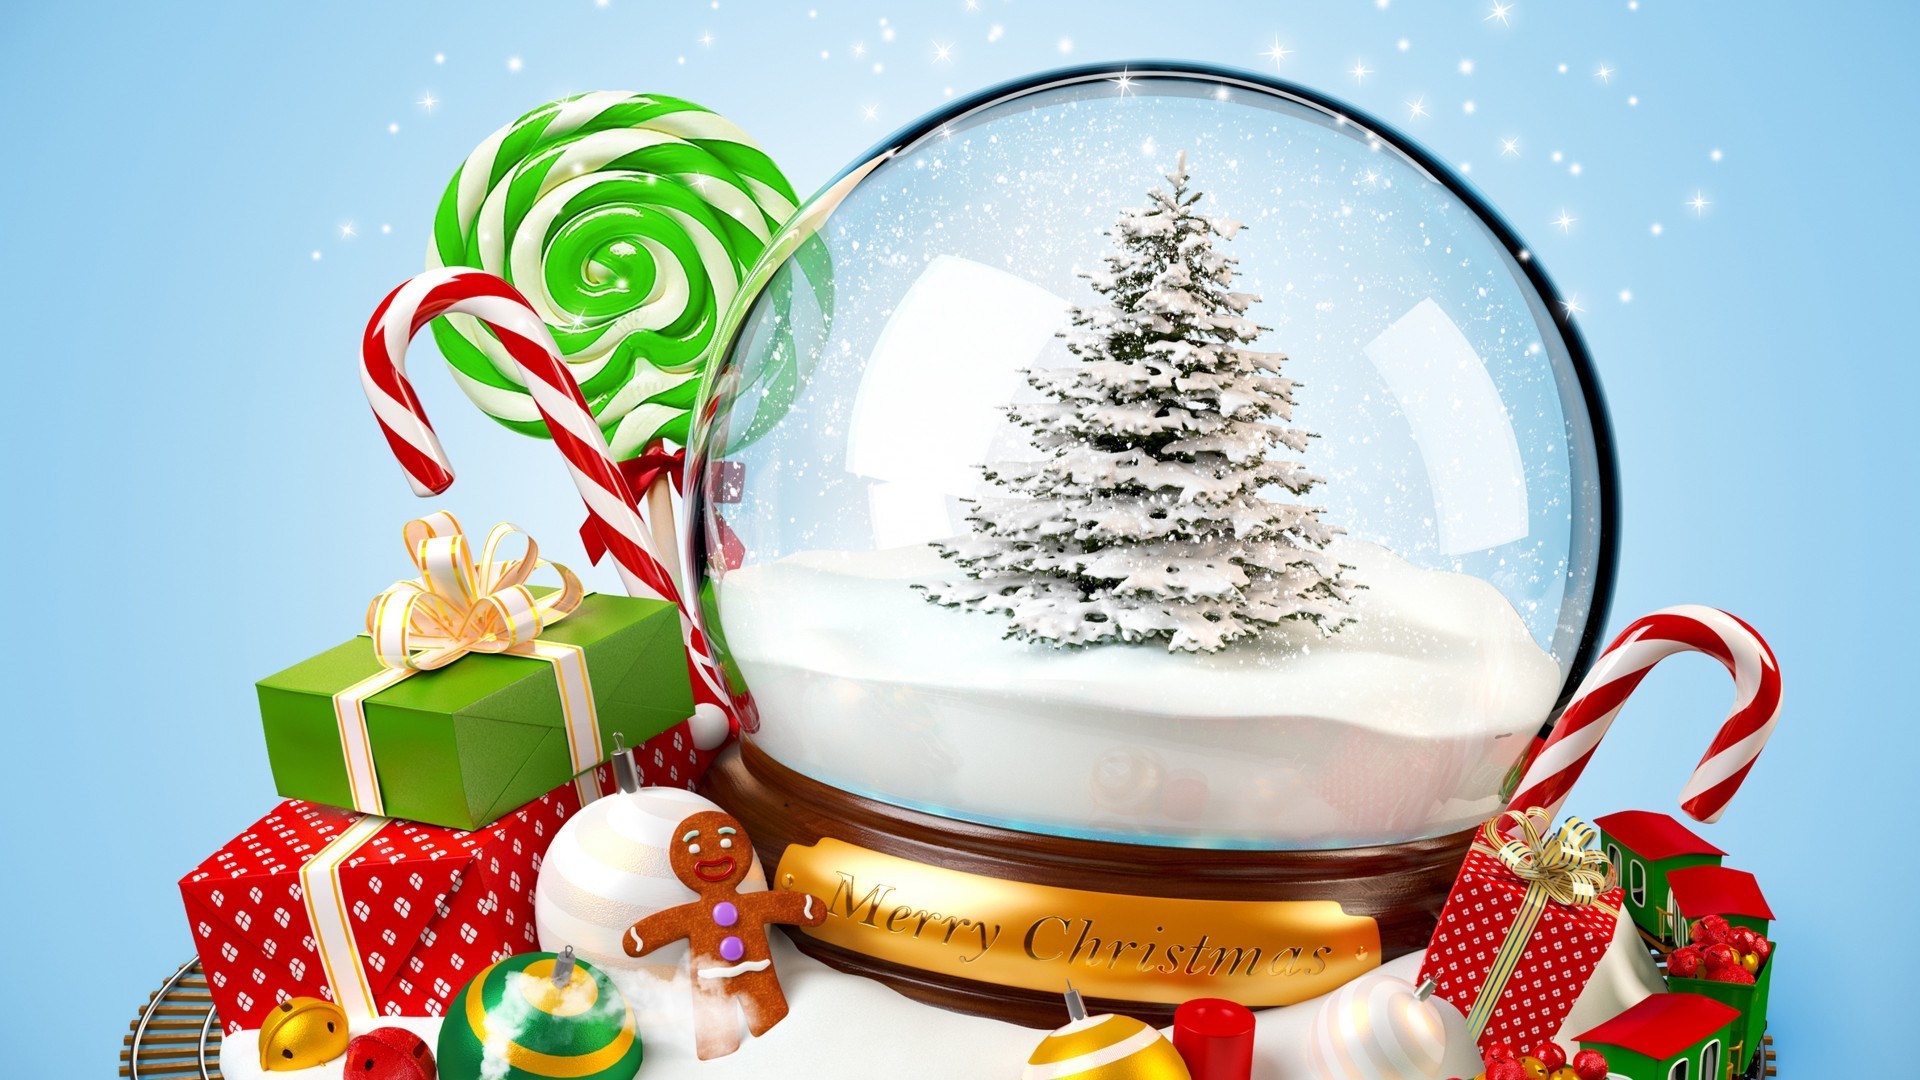 новый год рождество зима снег мерри праздник конфеты отпуск подарок светит снежинка украшения традиционные нить